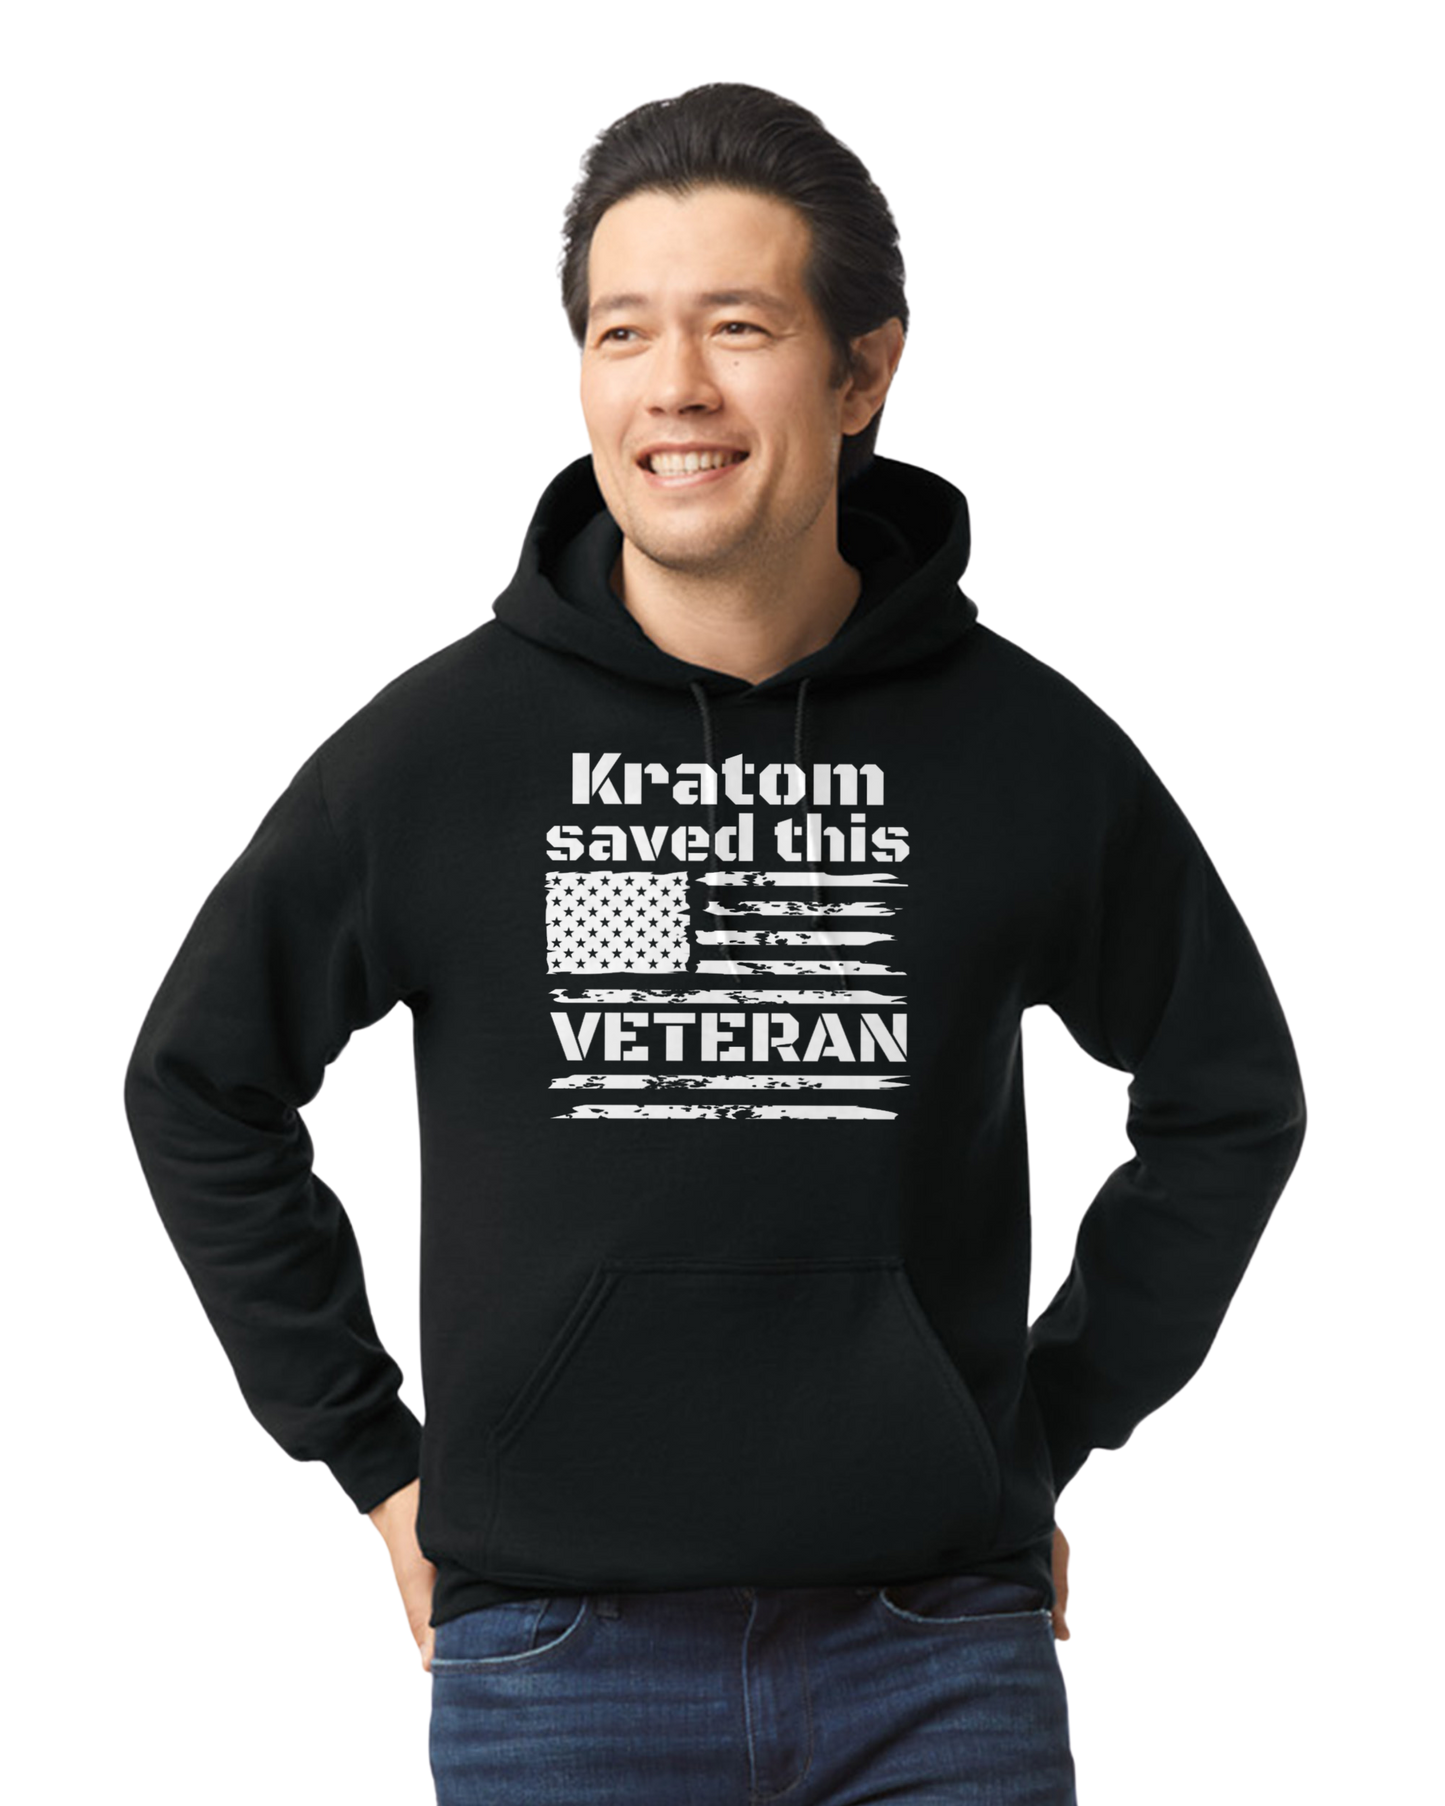 Kratom saved this Veteran